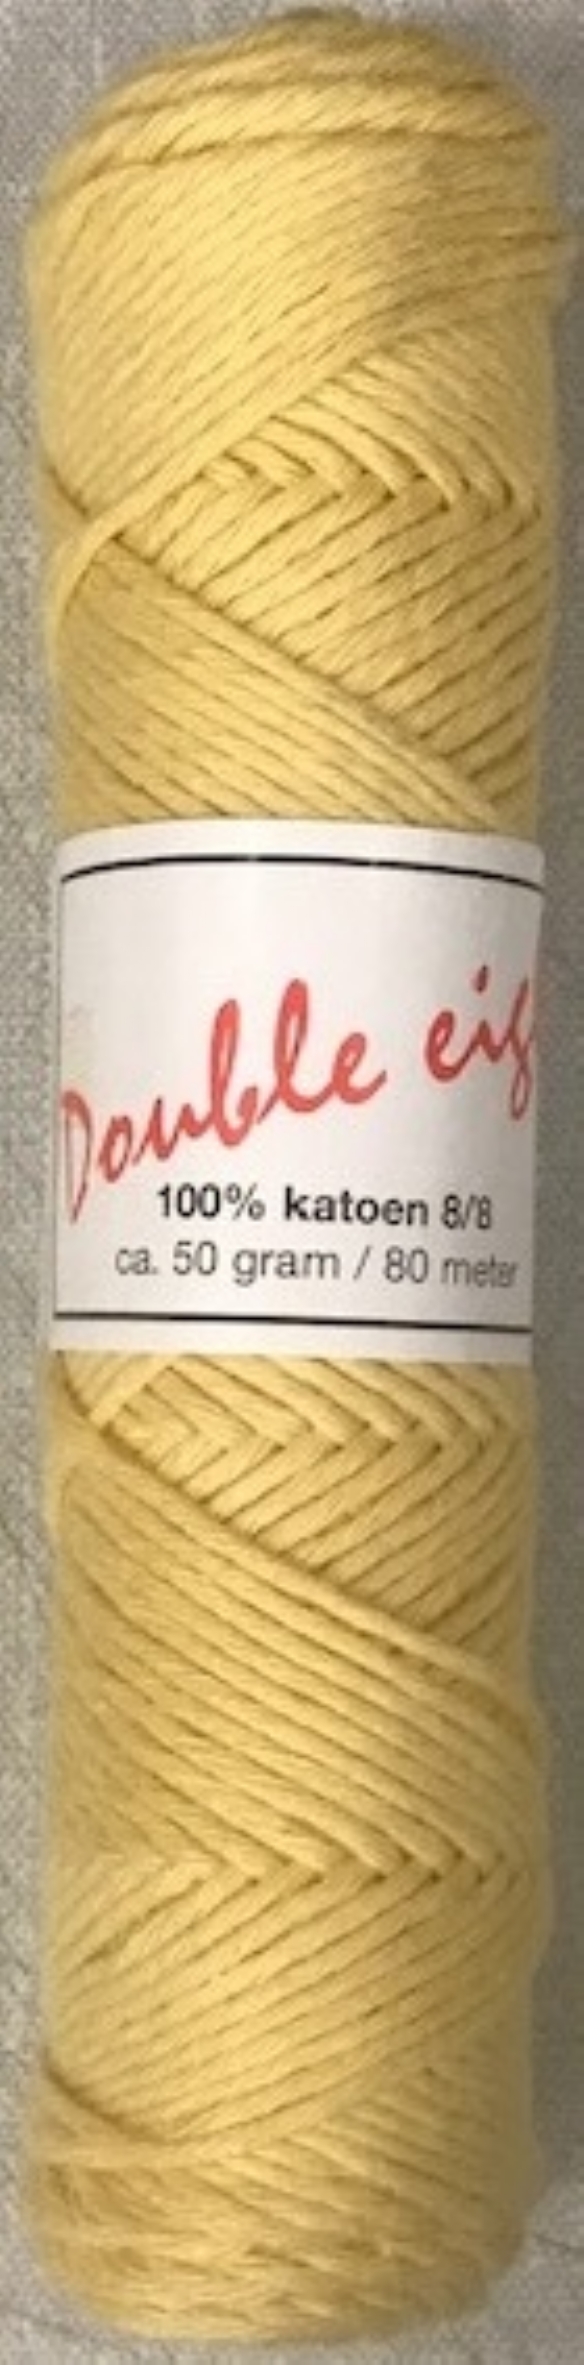 Cotton doubele eight 8/8, katoenen breigaren/haakgaren, 50 gram, geel